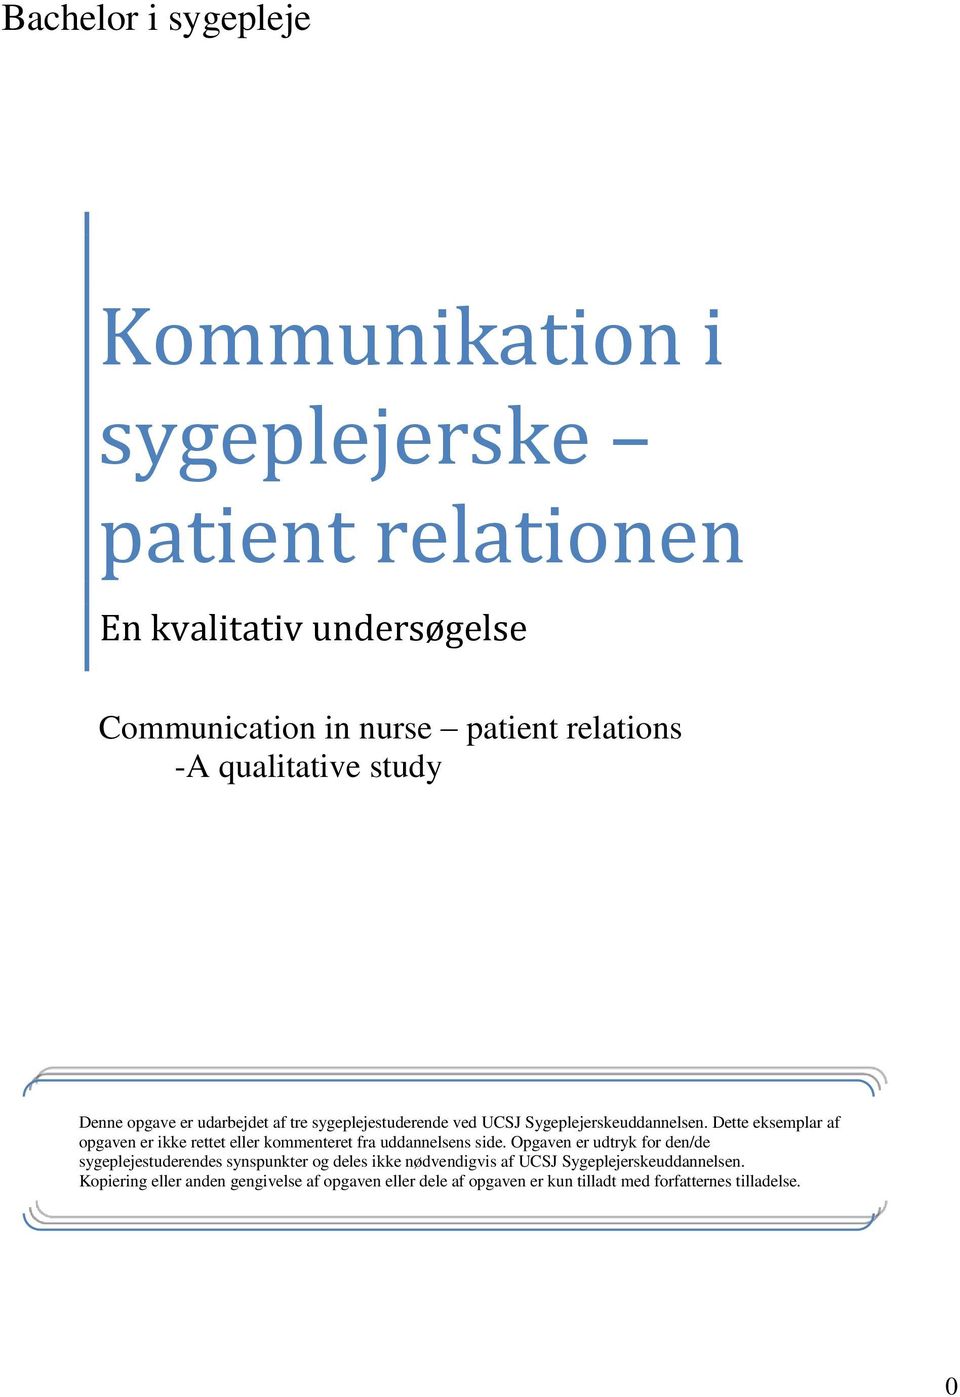 Kommunikation i sygeplejerske patient relationen download